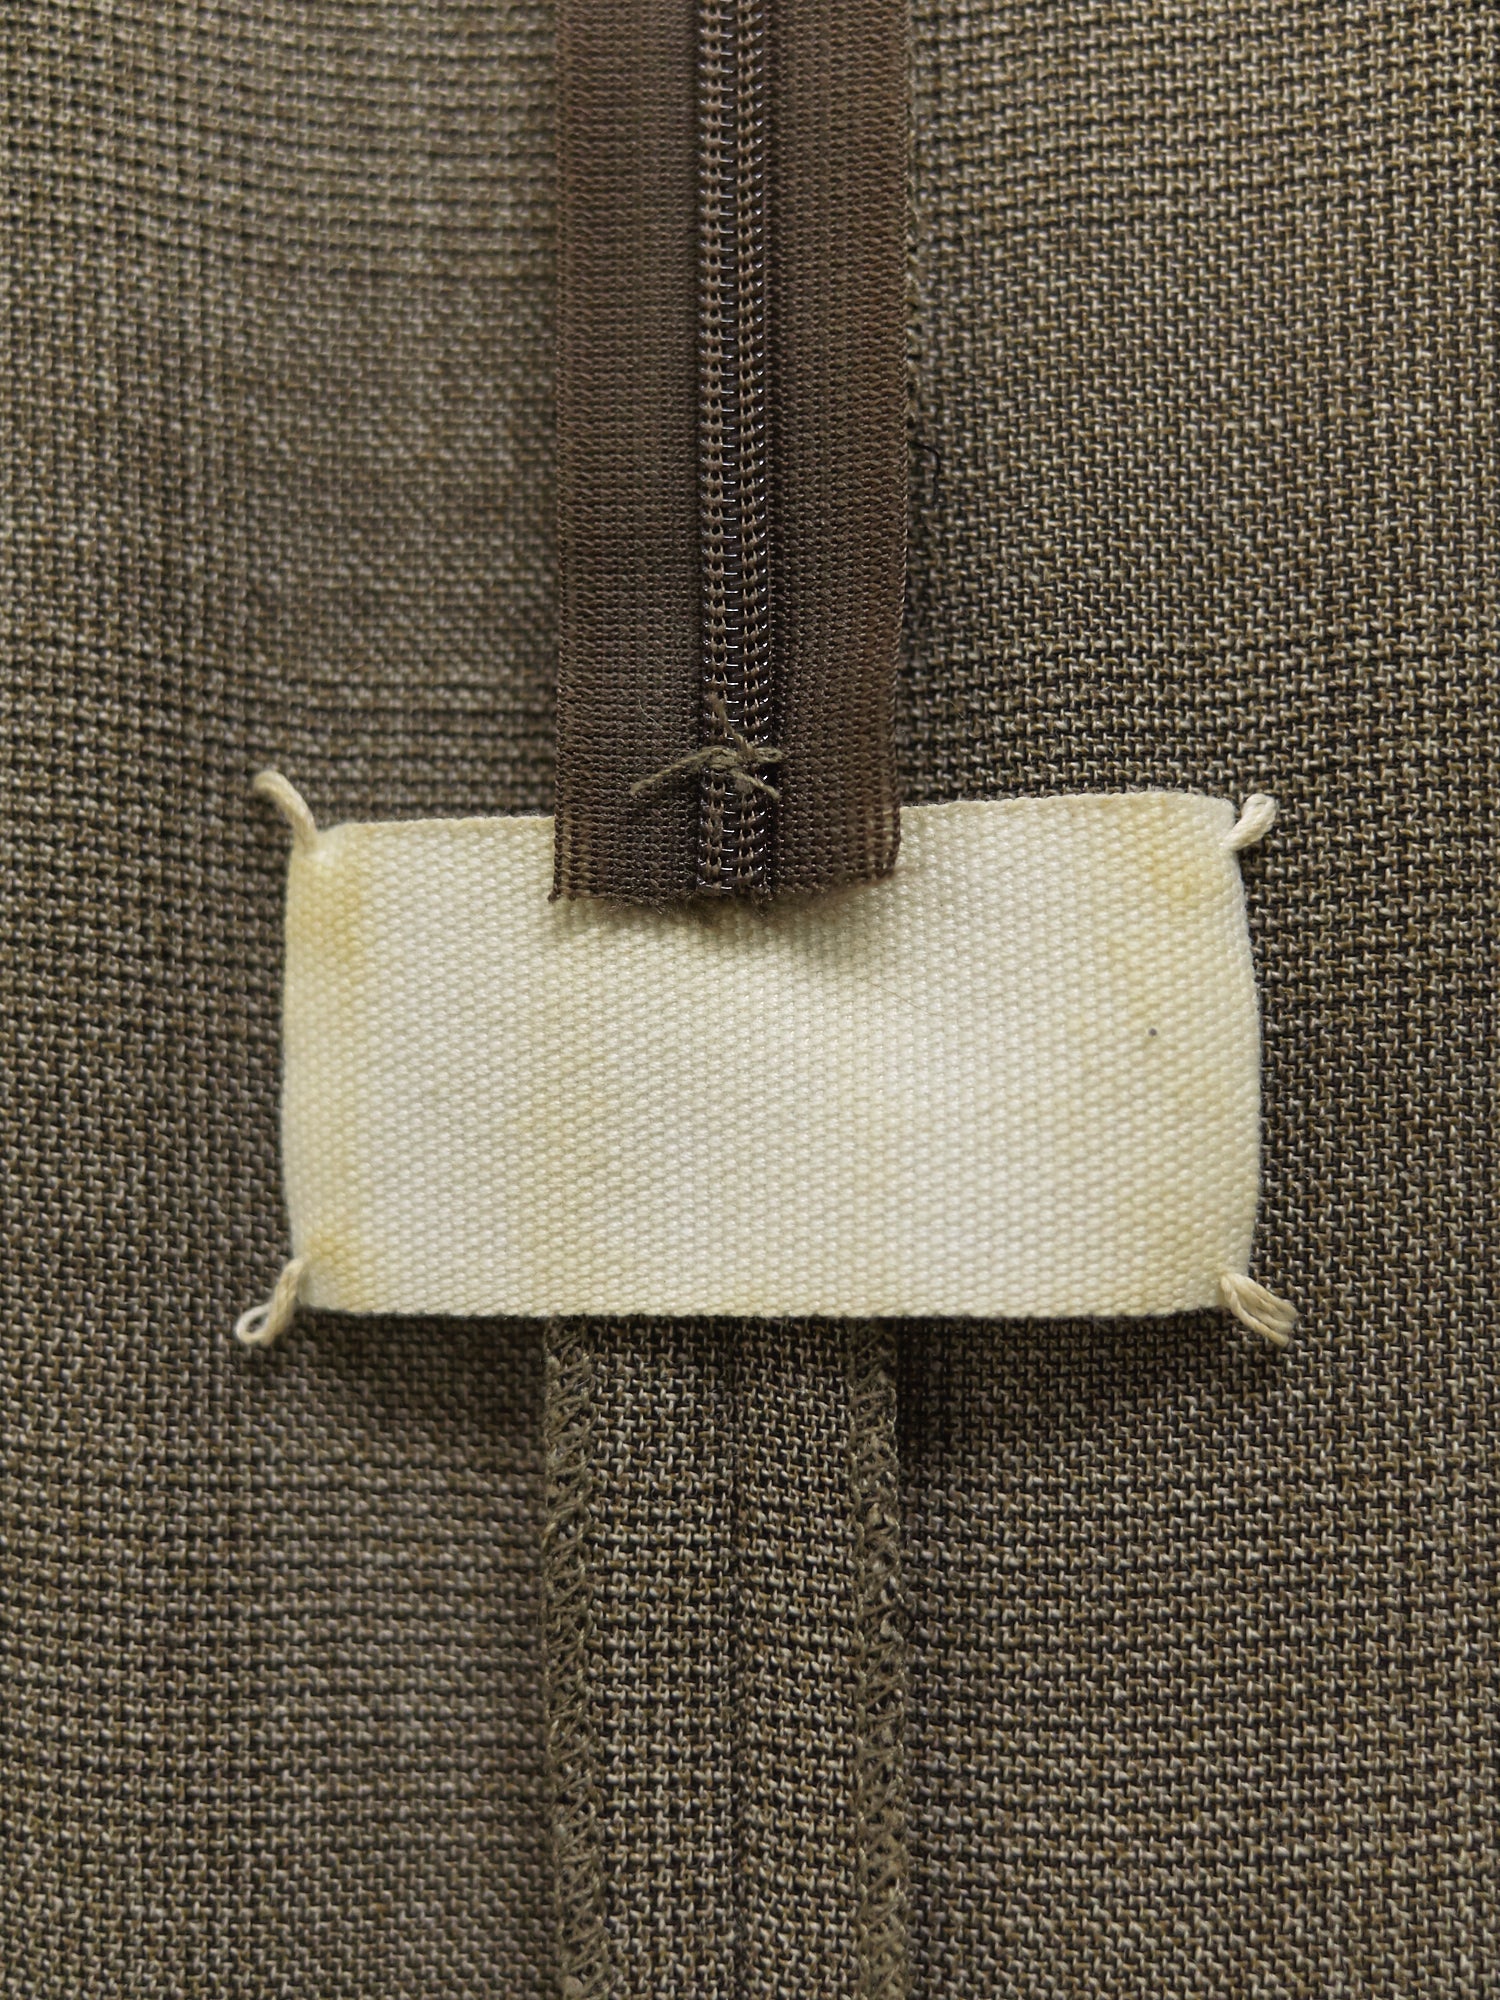 Maison Martin Margiela SS2001 brown wool check facing detail sleeveless dress 38